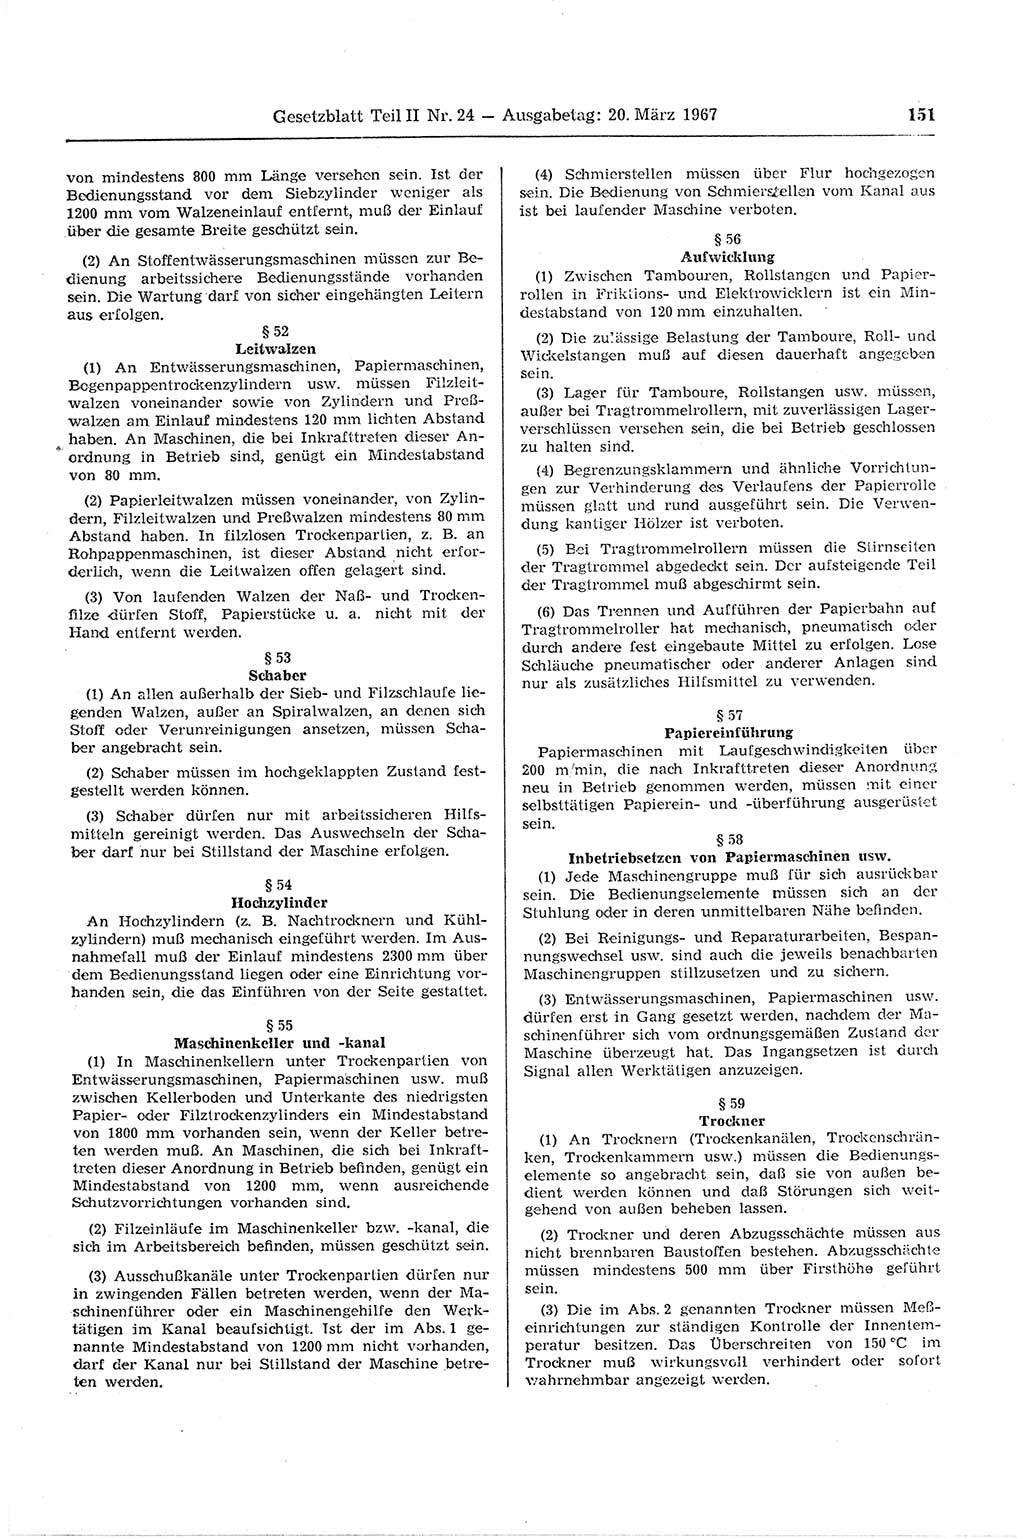 Gesetzblatt (GBl.) der Deutschen Demokratischen Republik (DDR) Teil ⅠⅠ 1967, Seite 151 (GBl. DDR ⅠⅠ 1967, S. 151)